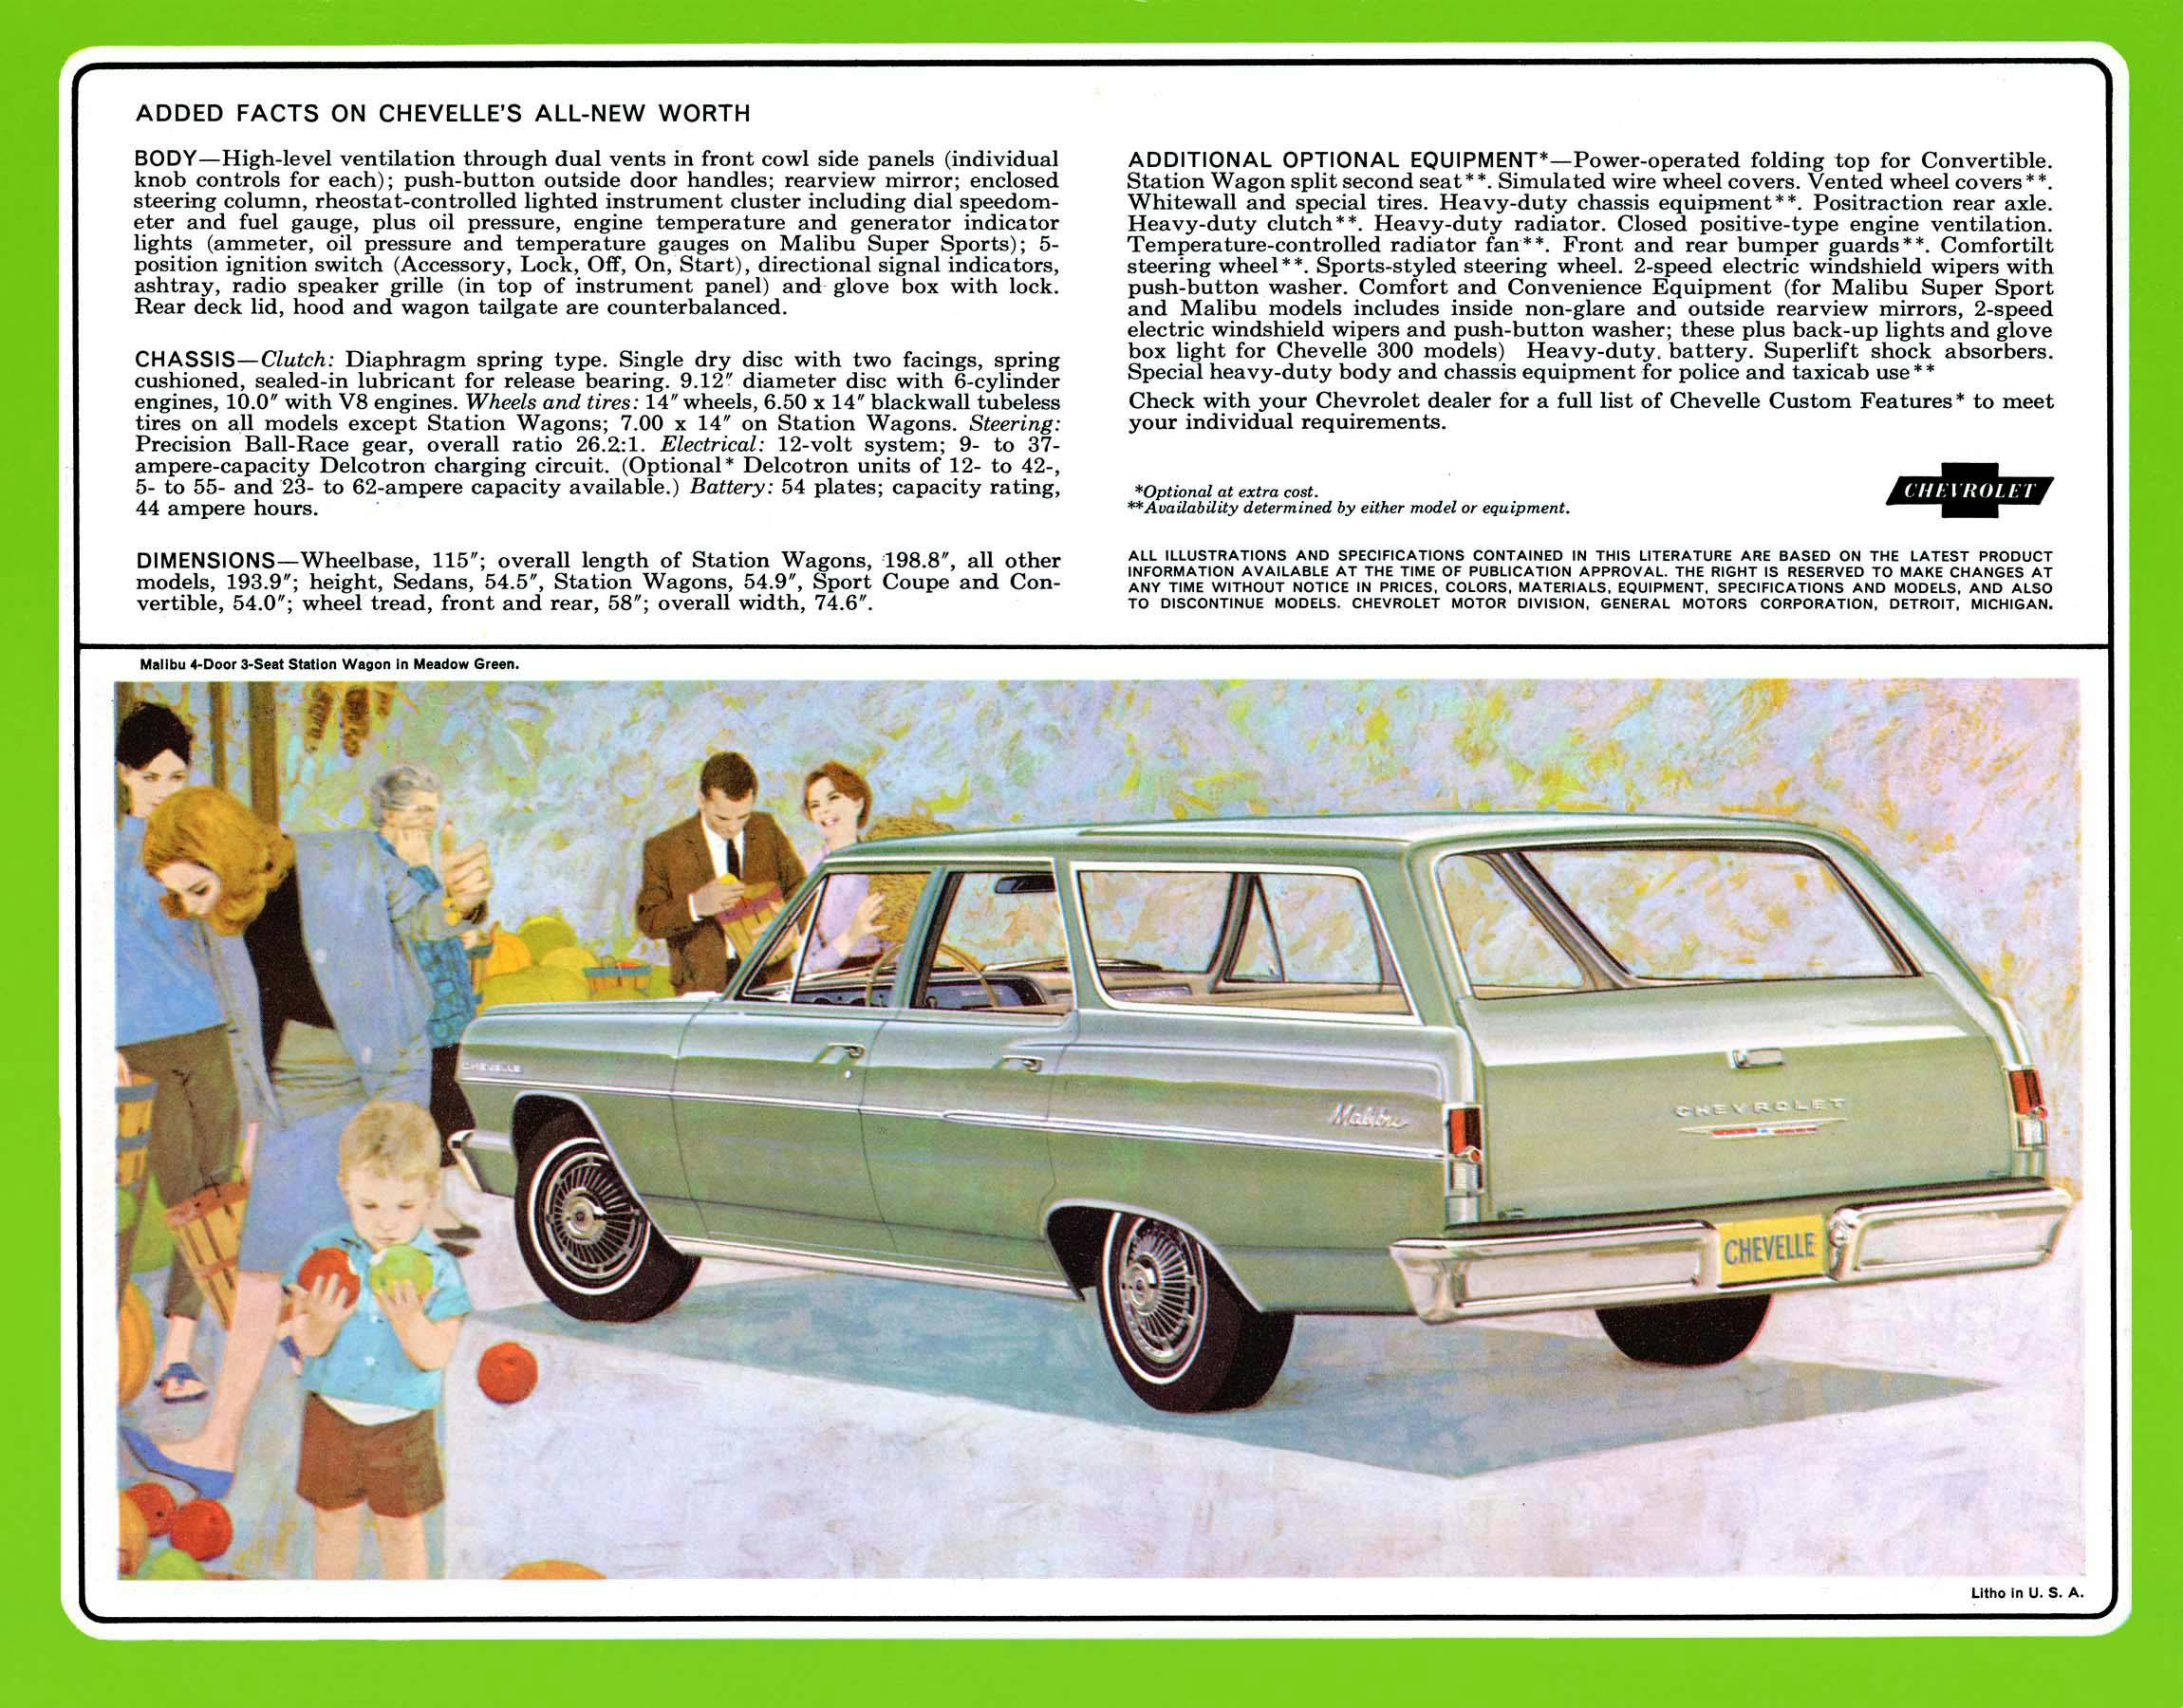 1964 Chevrolet Chevelle Brochure